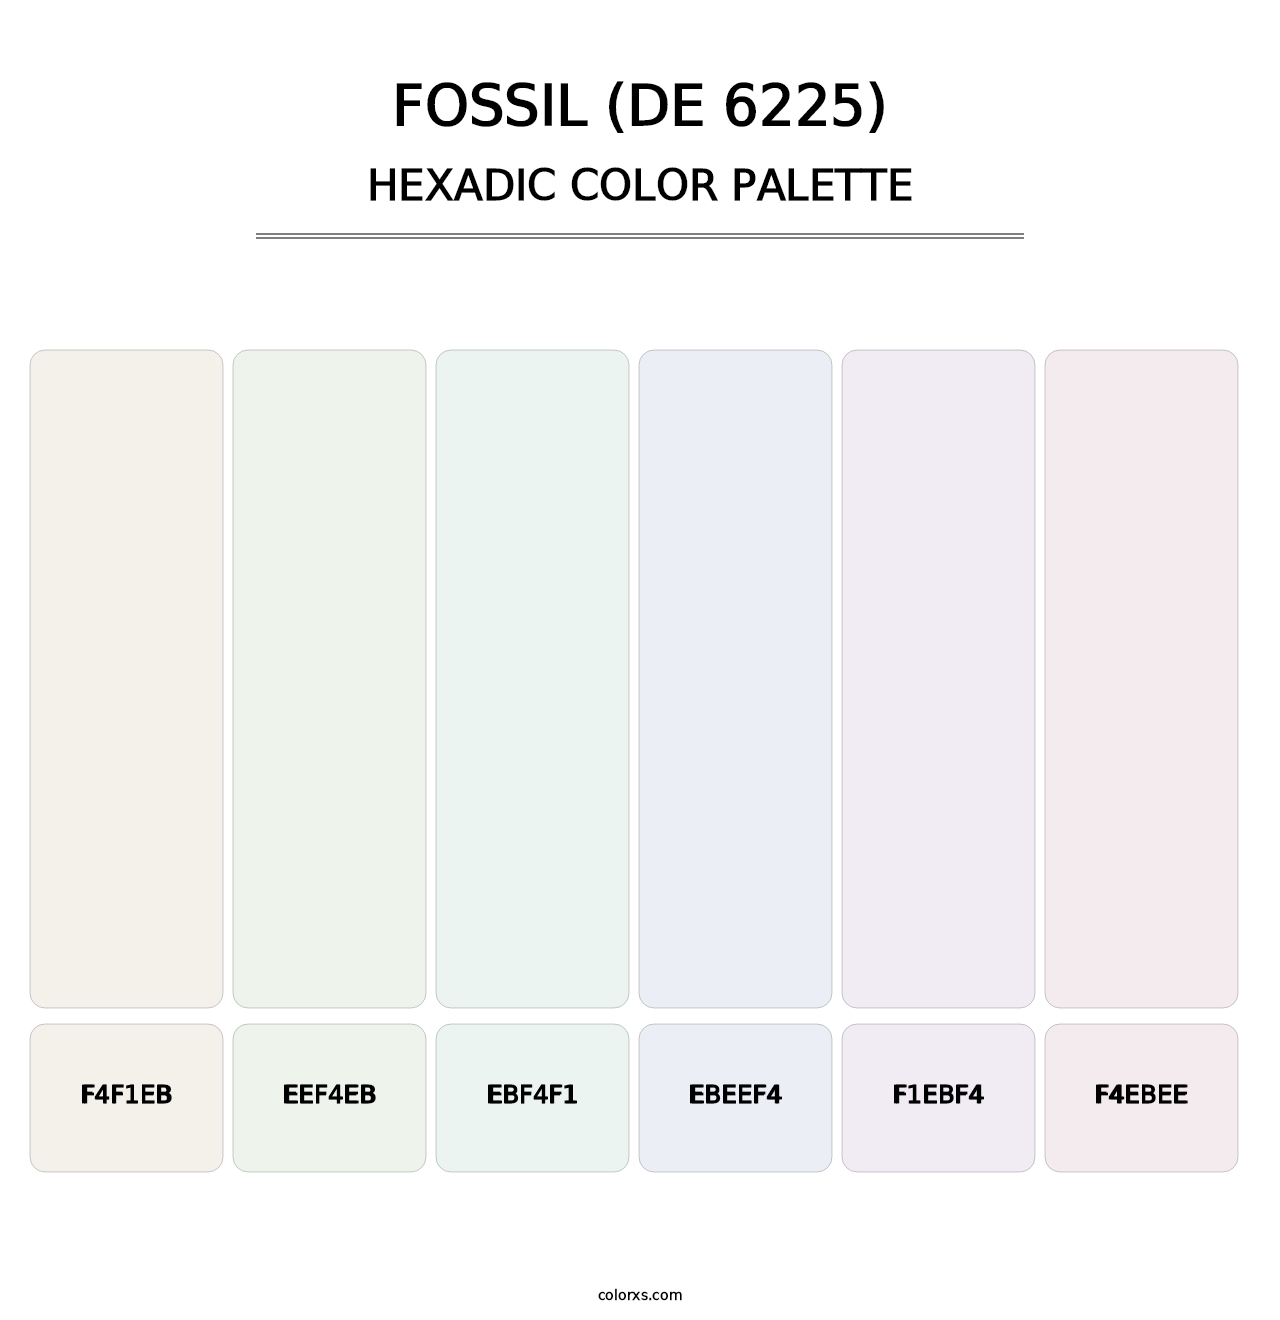 Fossil (DE 6225) - Hexadic Color Palette